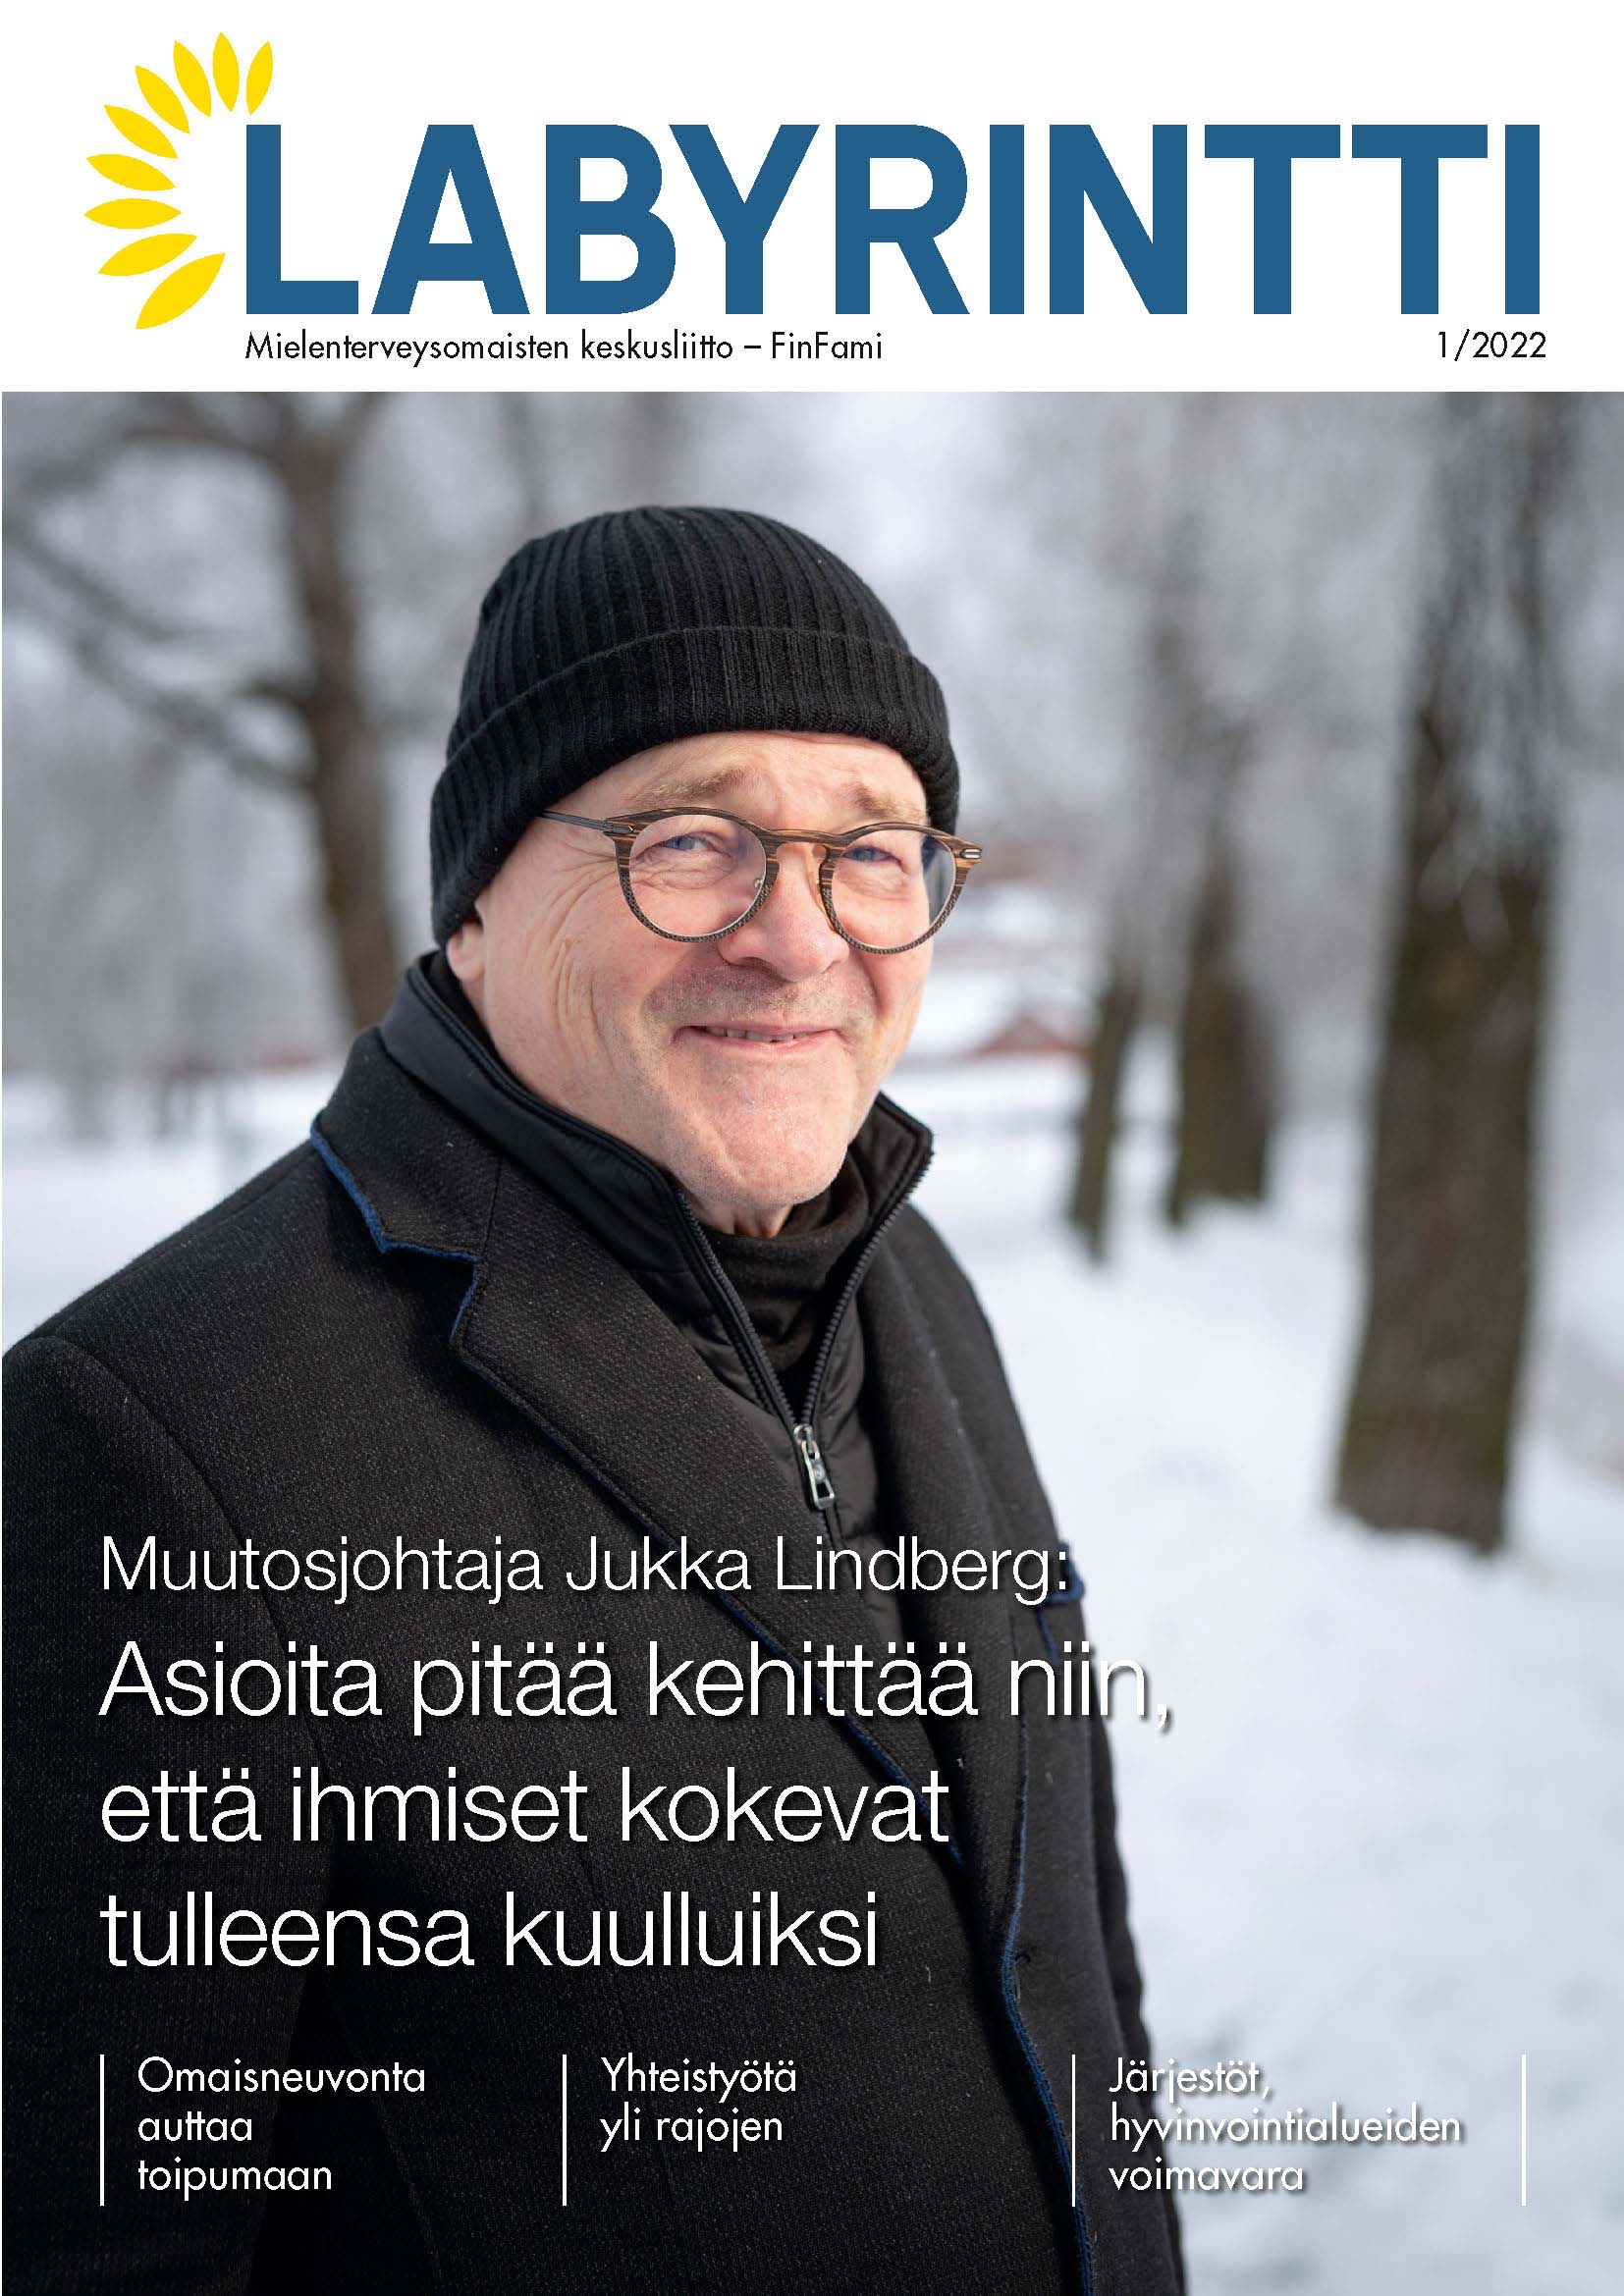 Labyrintti-lehden kansikuvassa muutosjohtaja Jukka Lindberg